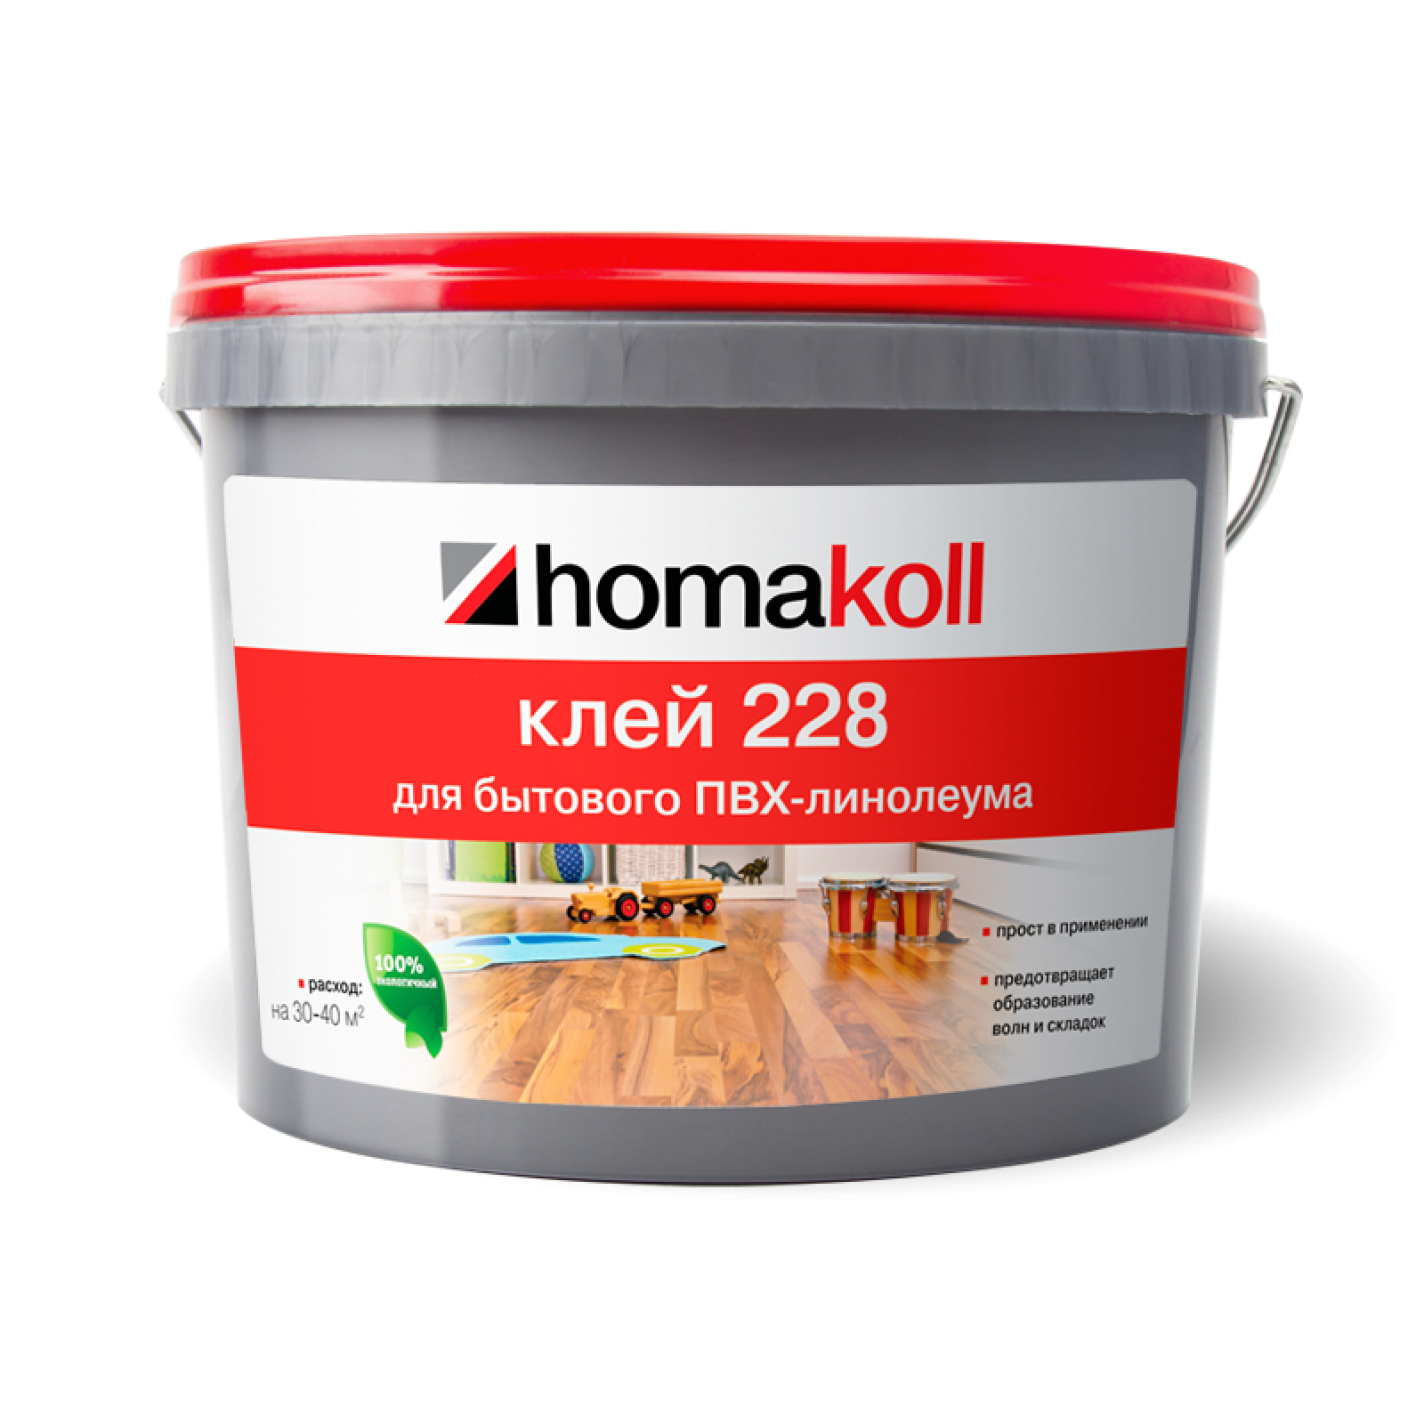 Клей homakoll 228 (4 кг)